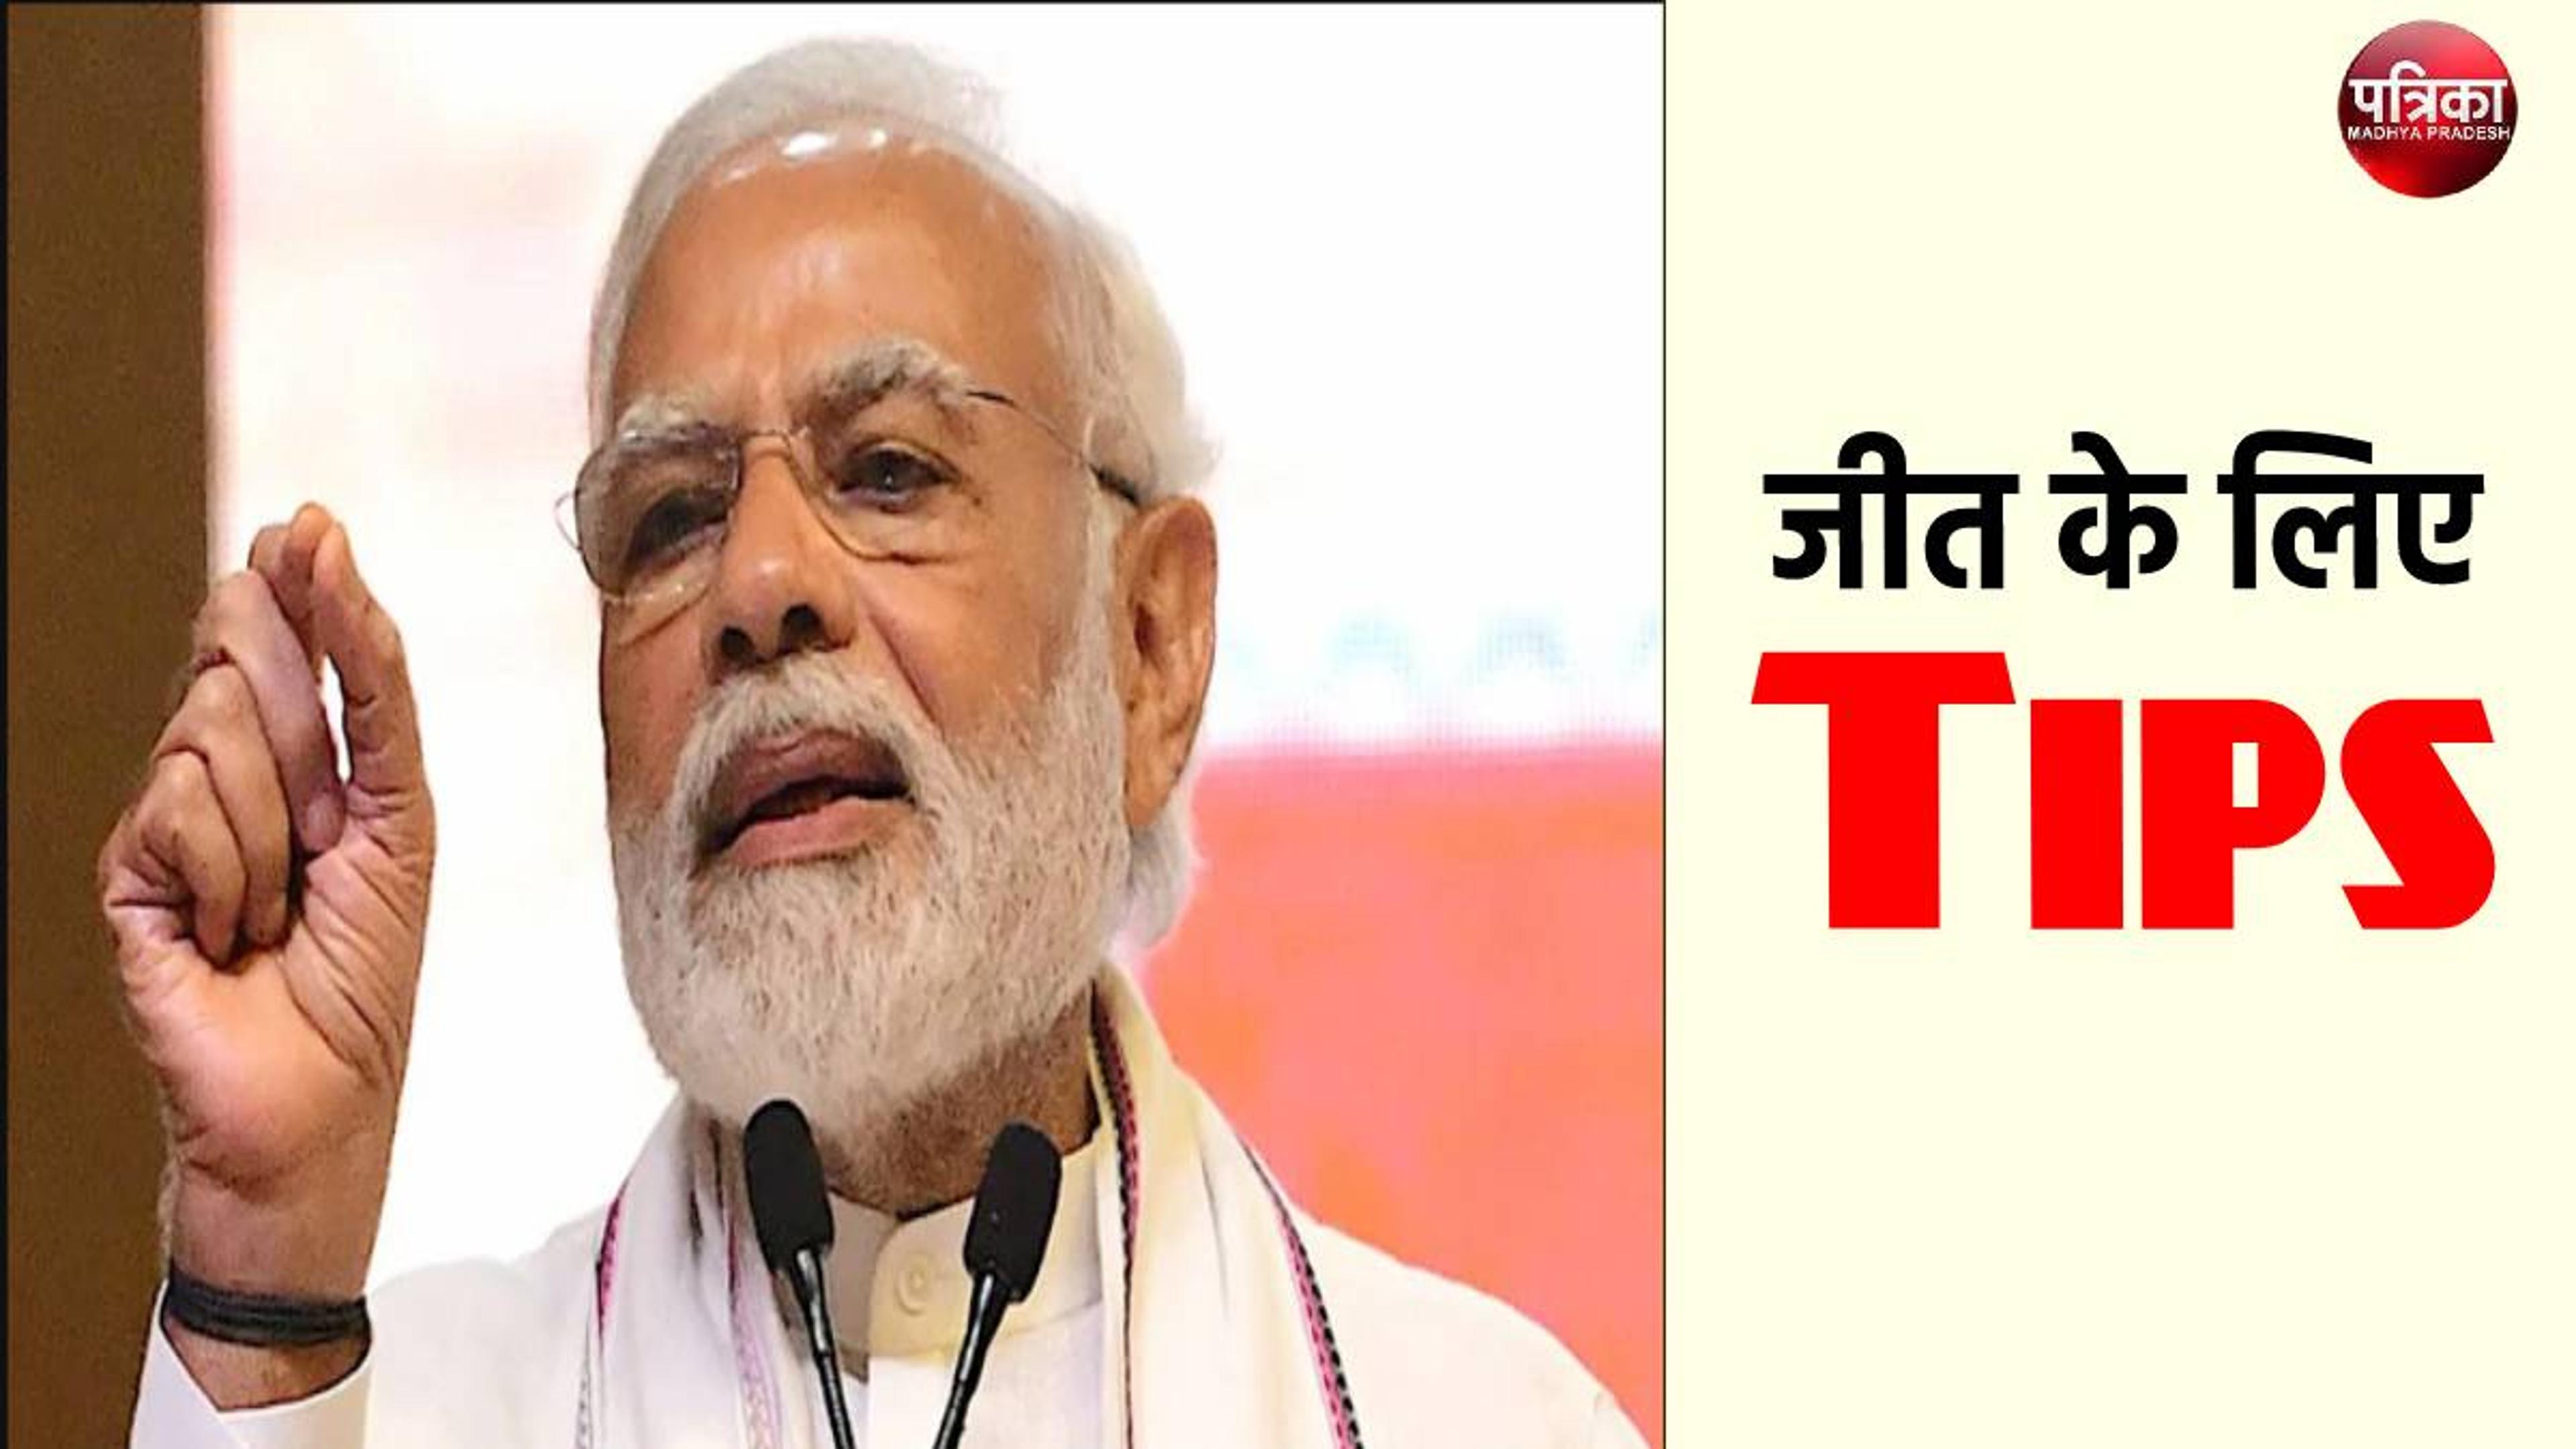 15 मिनट की बातचीत में जीत के लिए ‘PM नरेंद्र मोदी’ ने दिए Tips , जानिए क्या कहा-
?